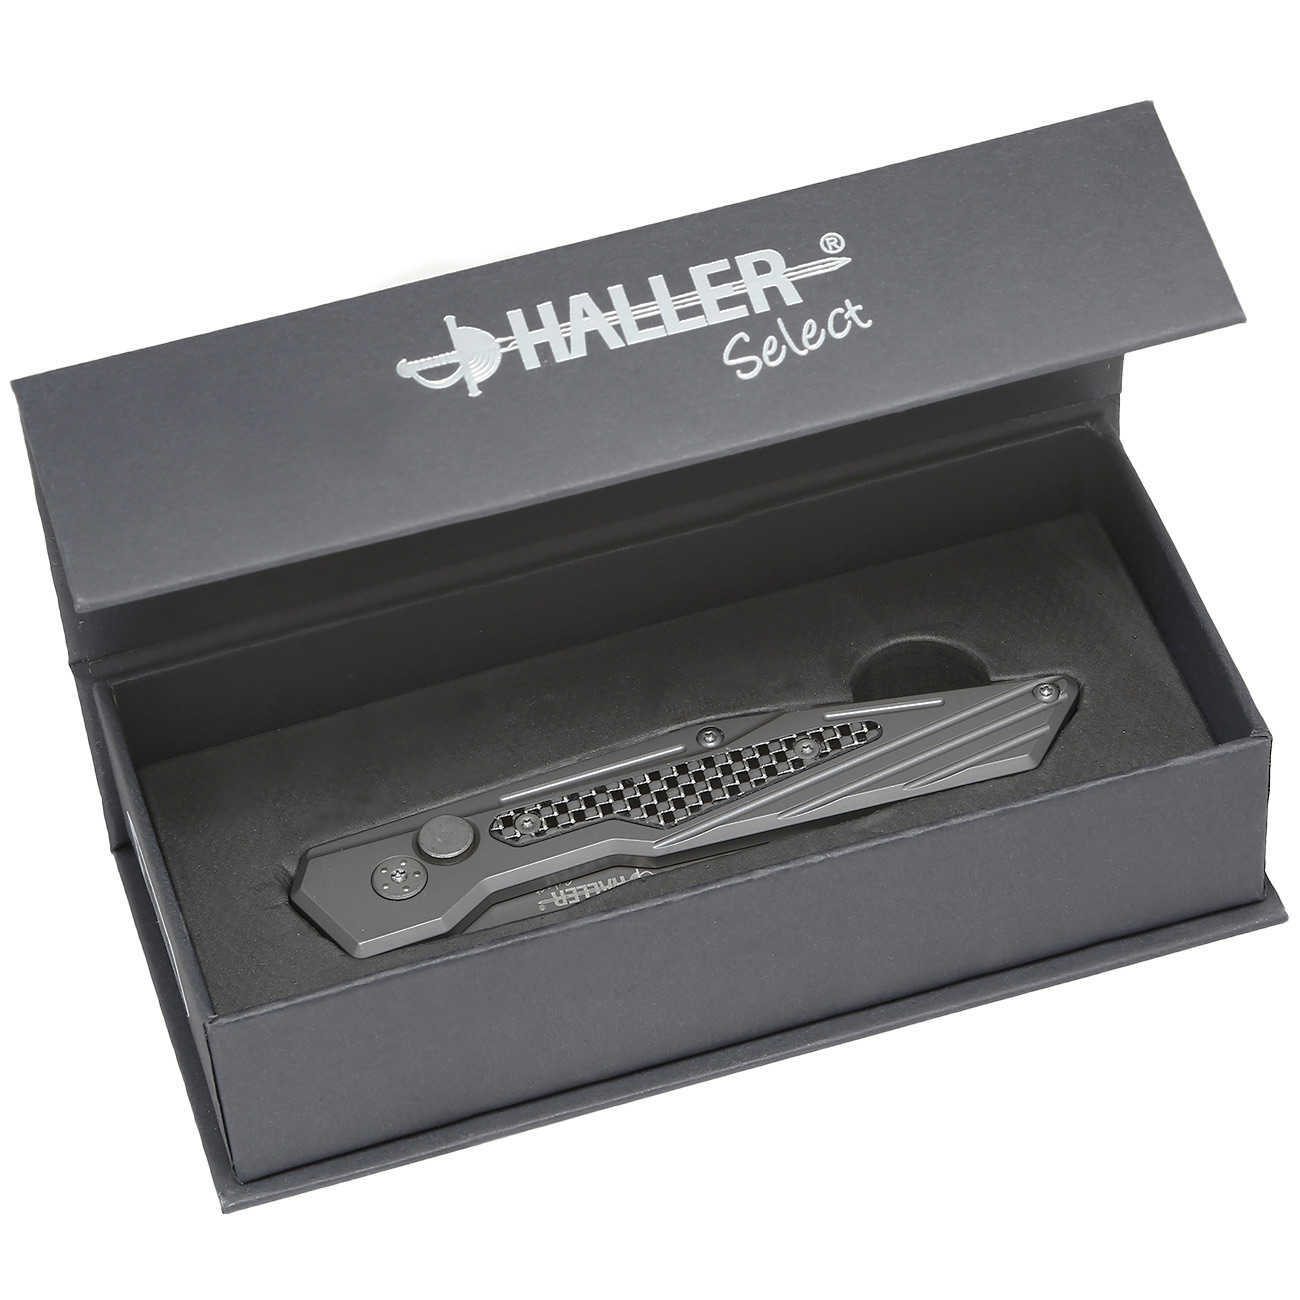 Haller Select Springmesser Silfri titanbeschichtet mit Gürtelclip u. Geschenkbox Bild 1